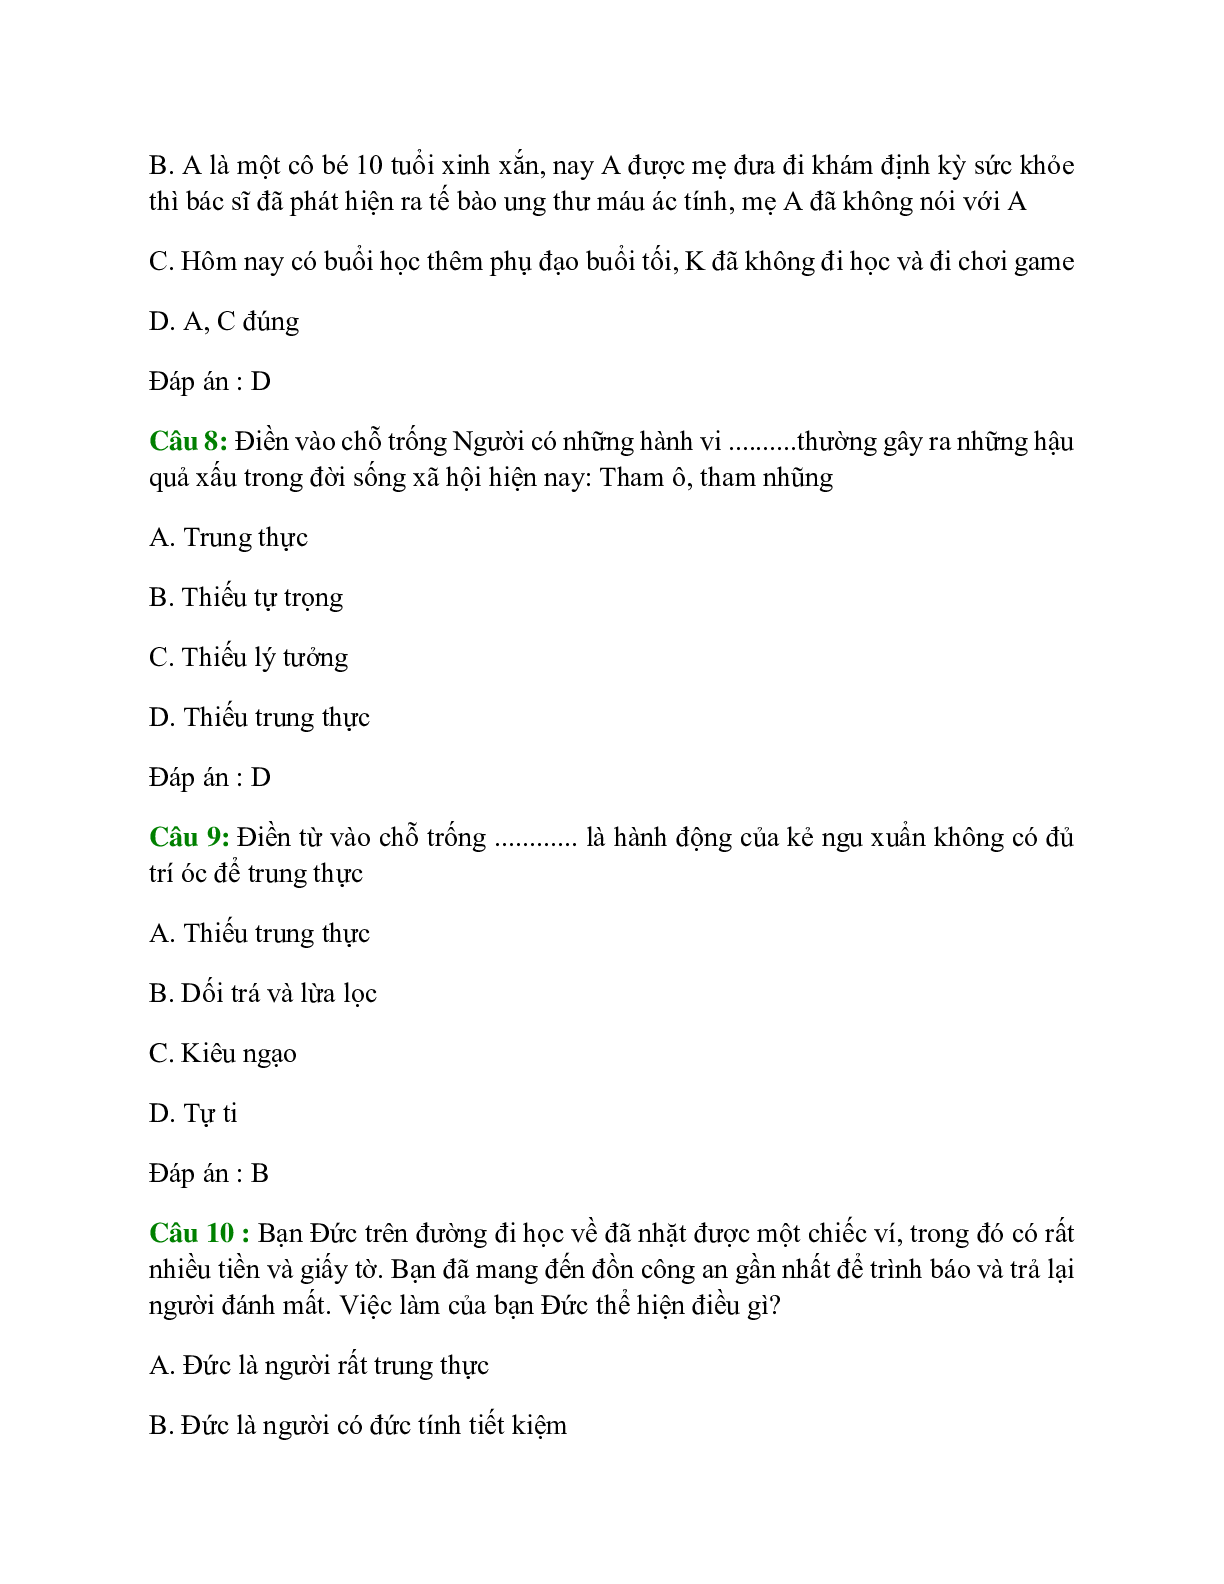 Trắc nghiệm GDCD 7 Bài 2 có đáp án: Trung thực (trang 3)